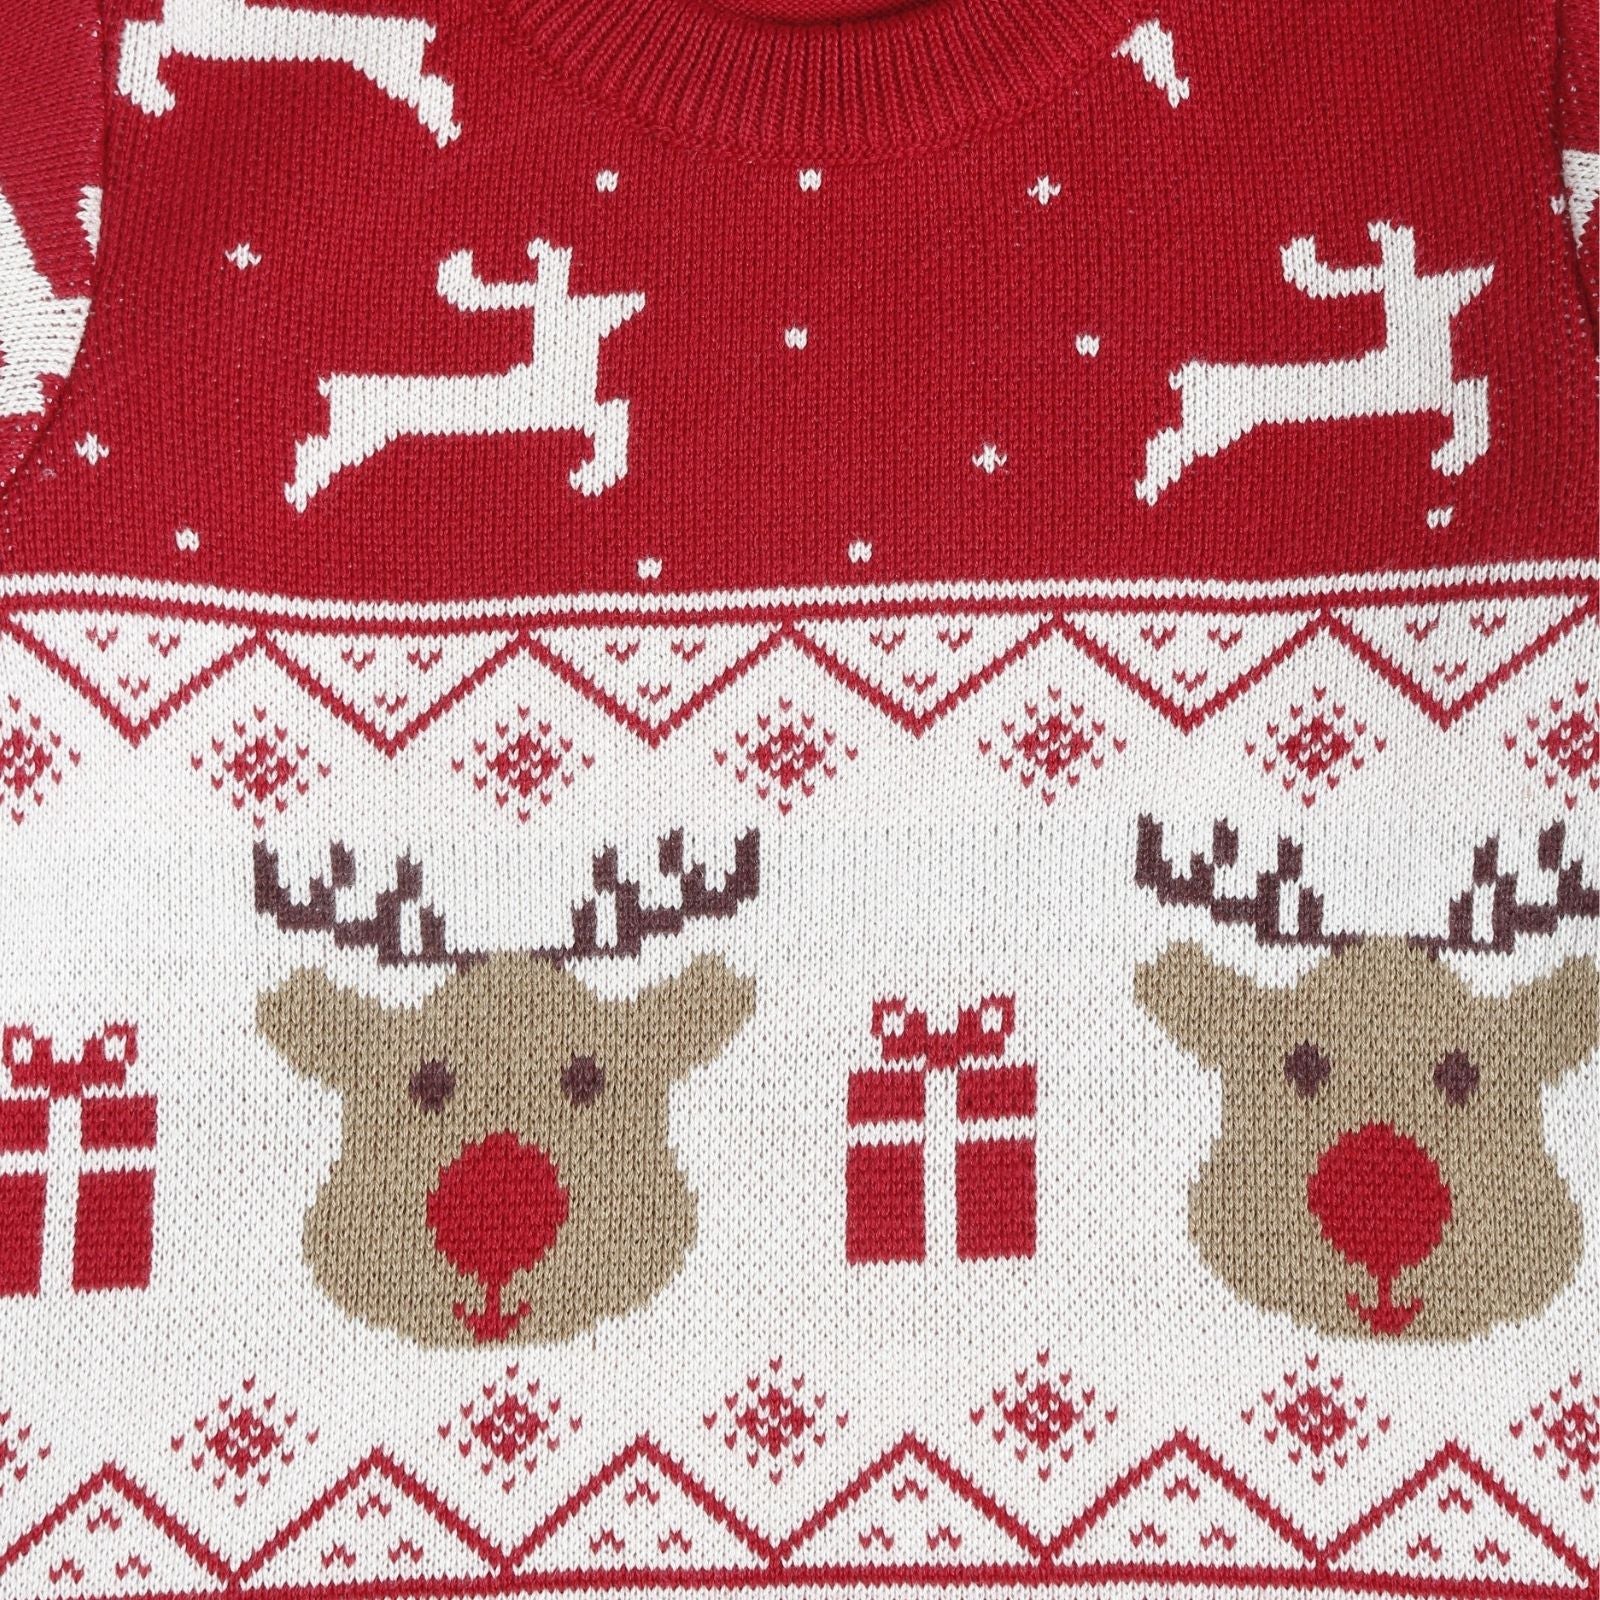 Greendeer Jaunty Reindeer & Joyful Reindeer 100% Cotton Sweater with Lower Set of 3